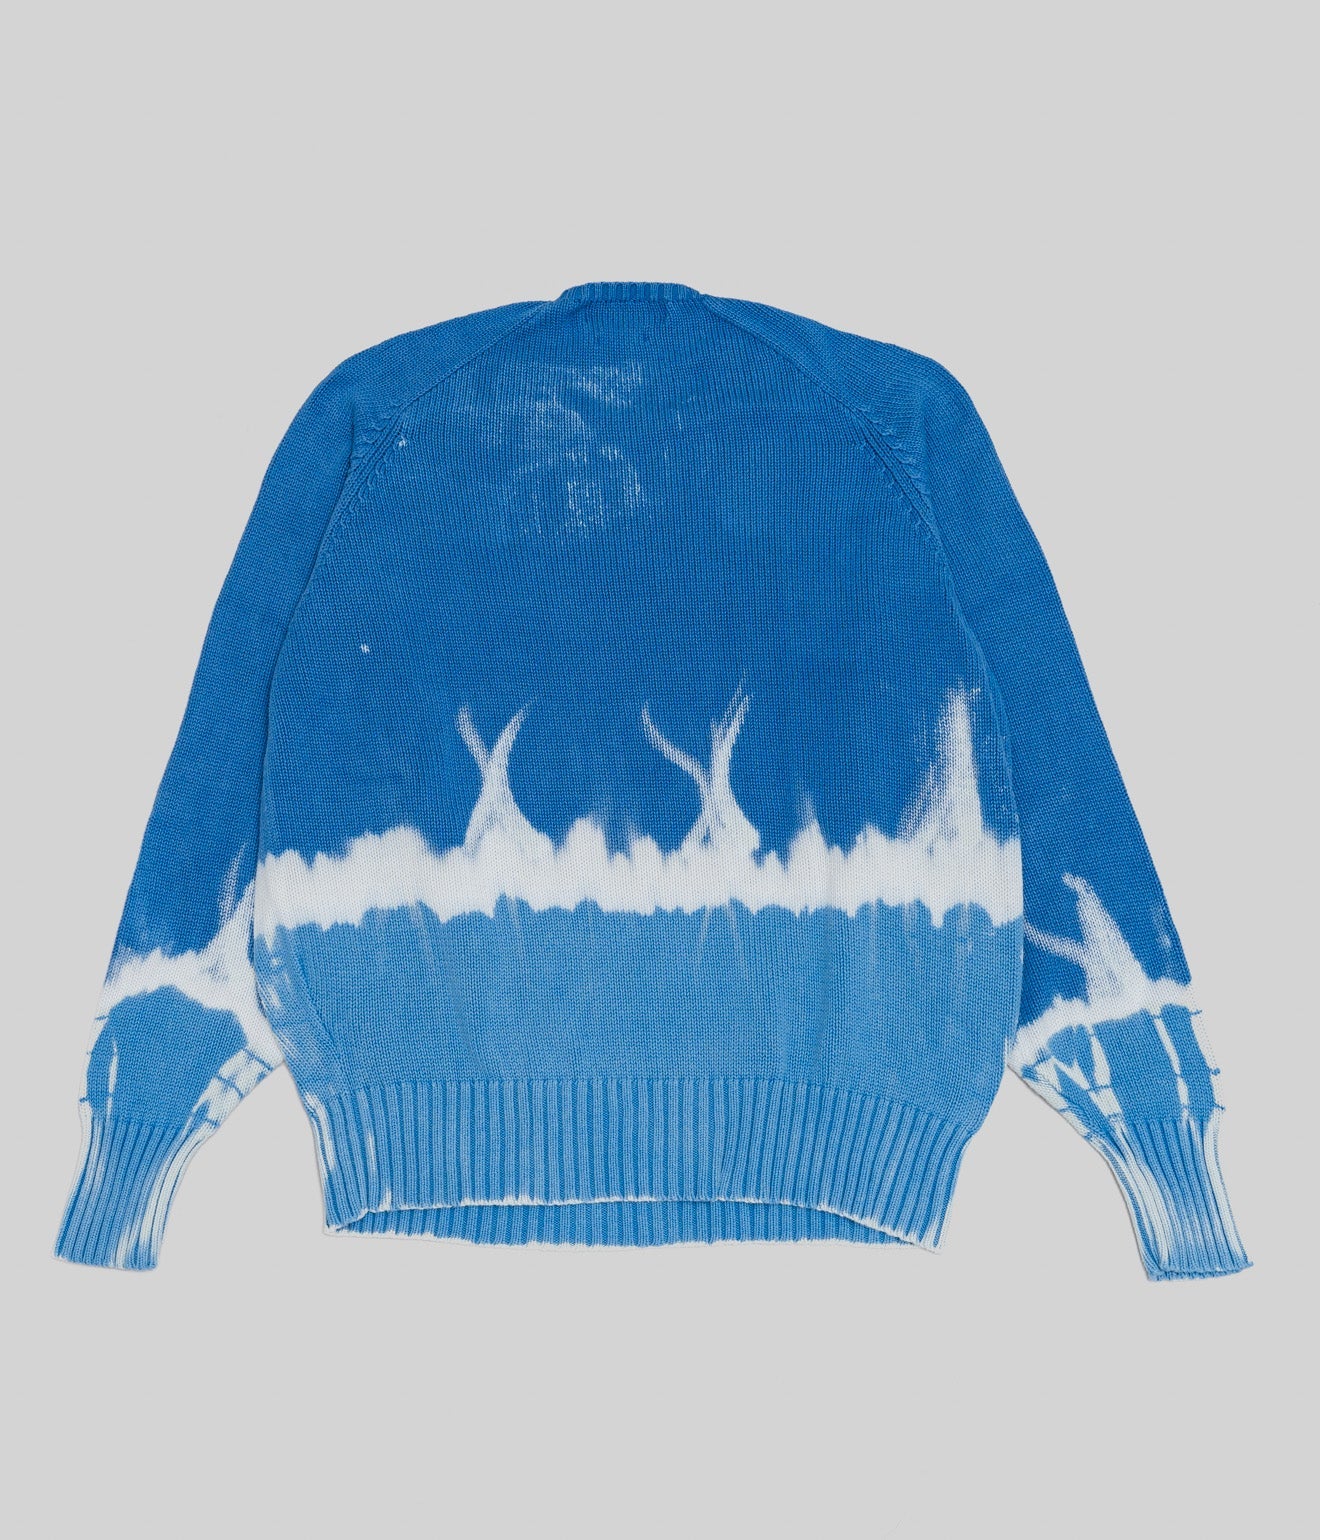 r "Tie-dye cotton sweater fire pattern" Blue - WEAREALLANIMALS